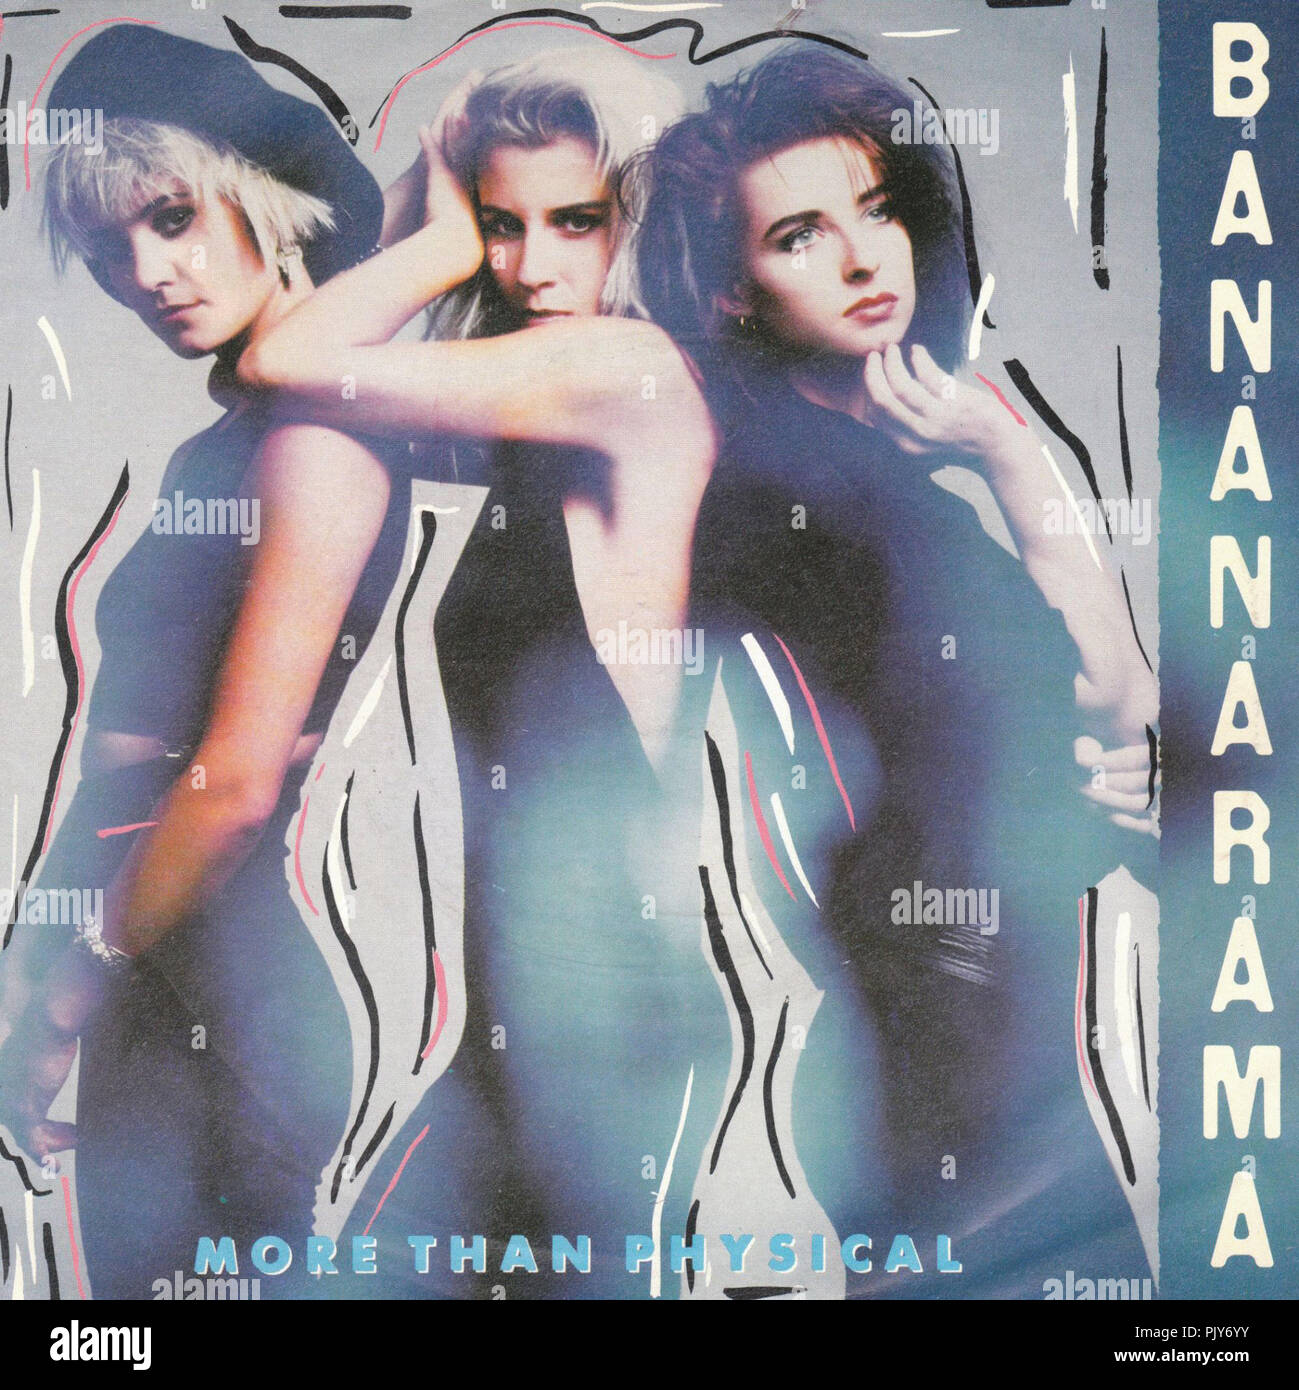 Bananarama - Mehr als physische Stockfoto